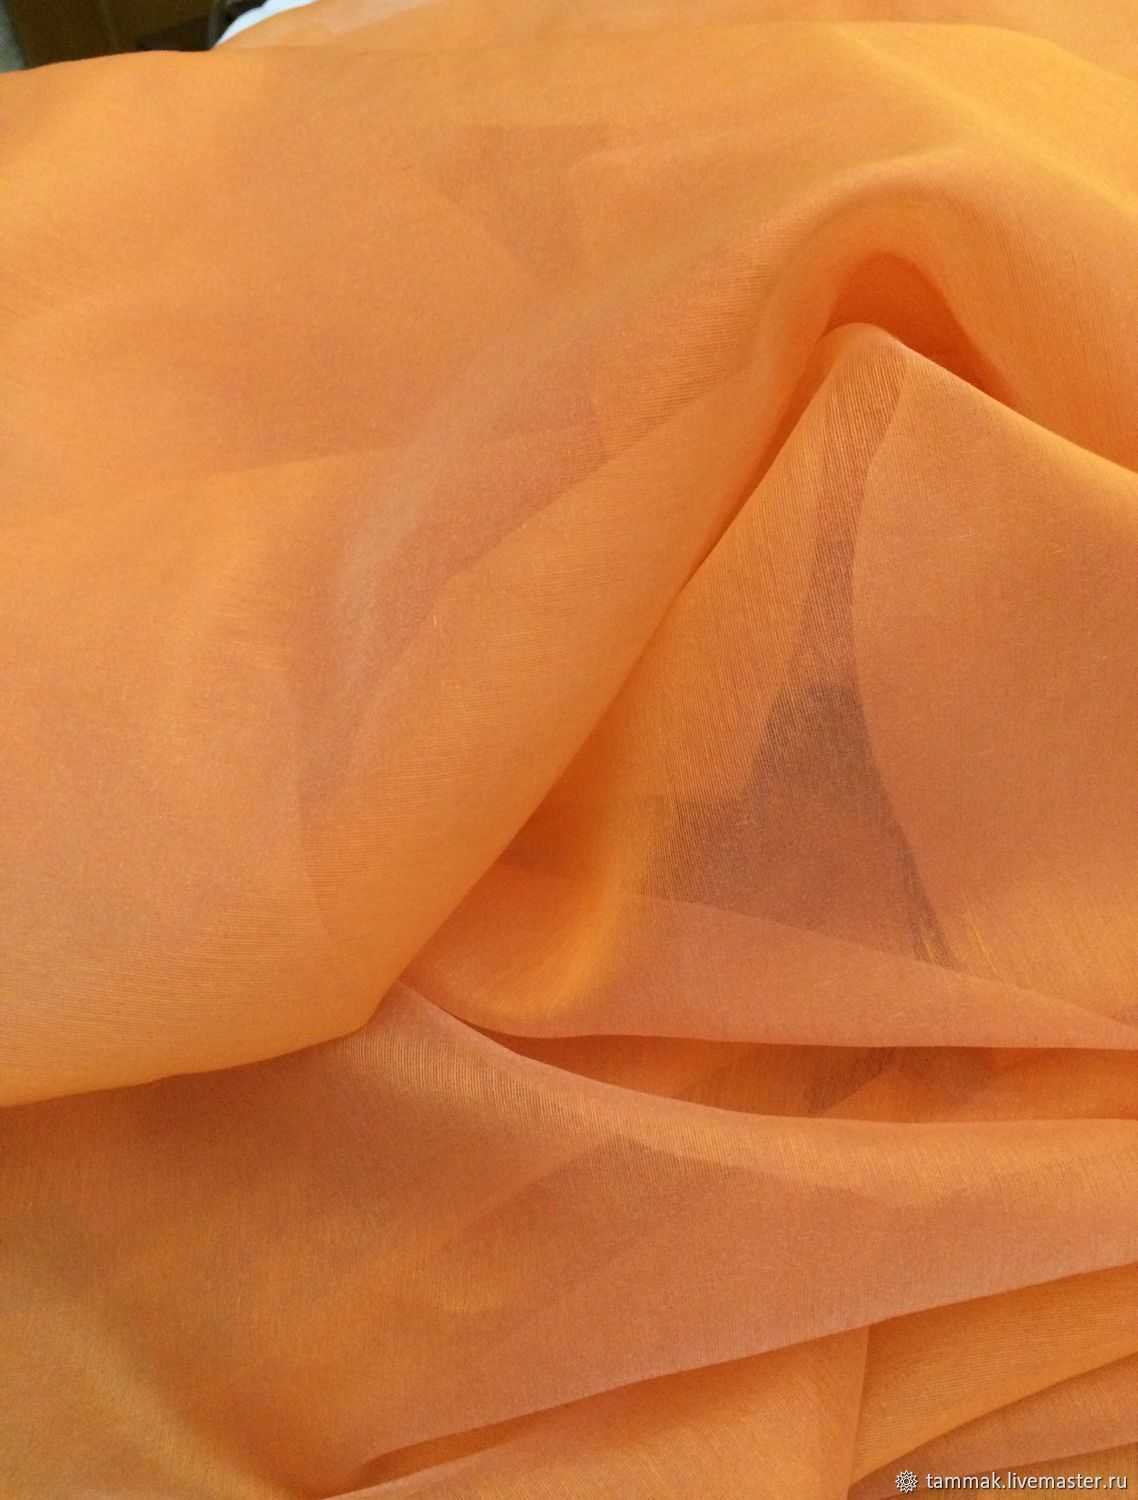 Платье из органди выглядит довольно интересно: при всей своей воздушности материал держит форму и образовывает объемные складки Такой эффект достигается за счет жесткой структуры